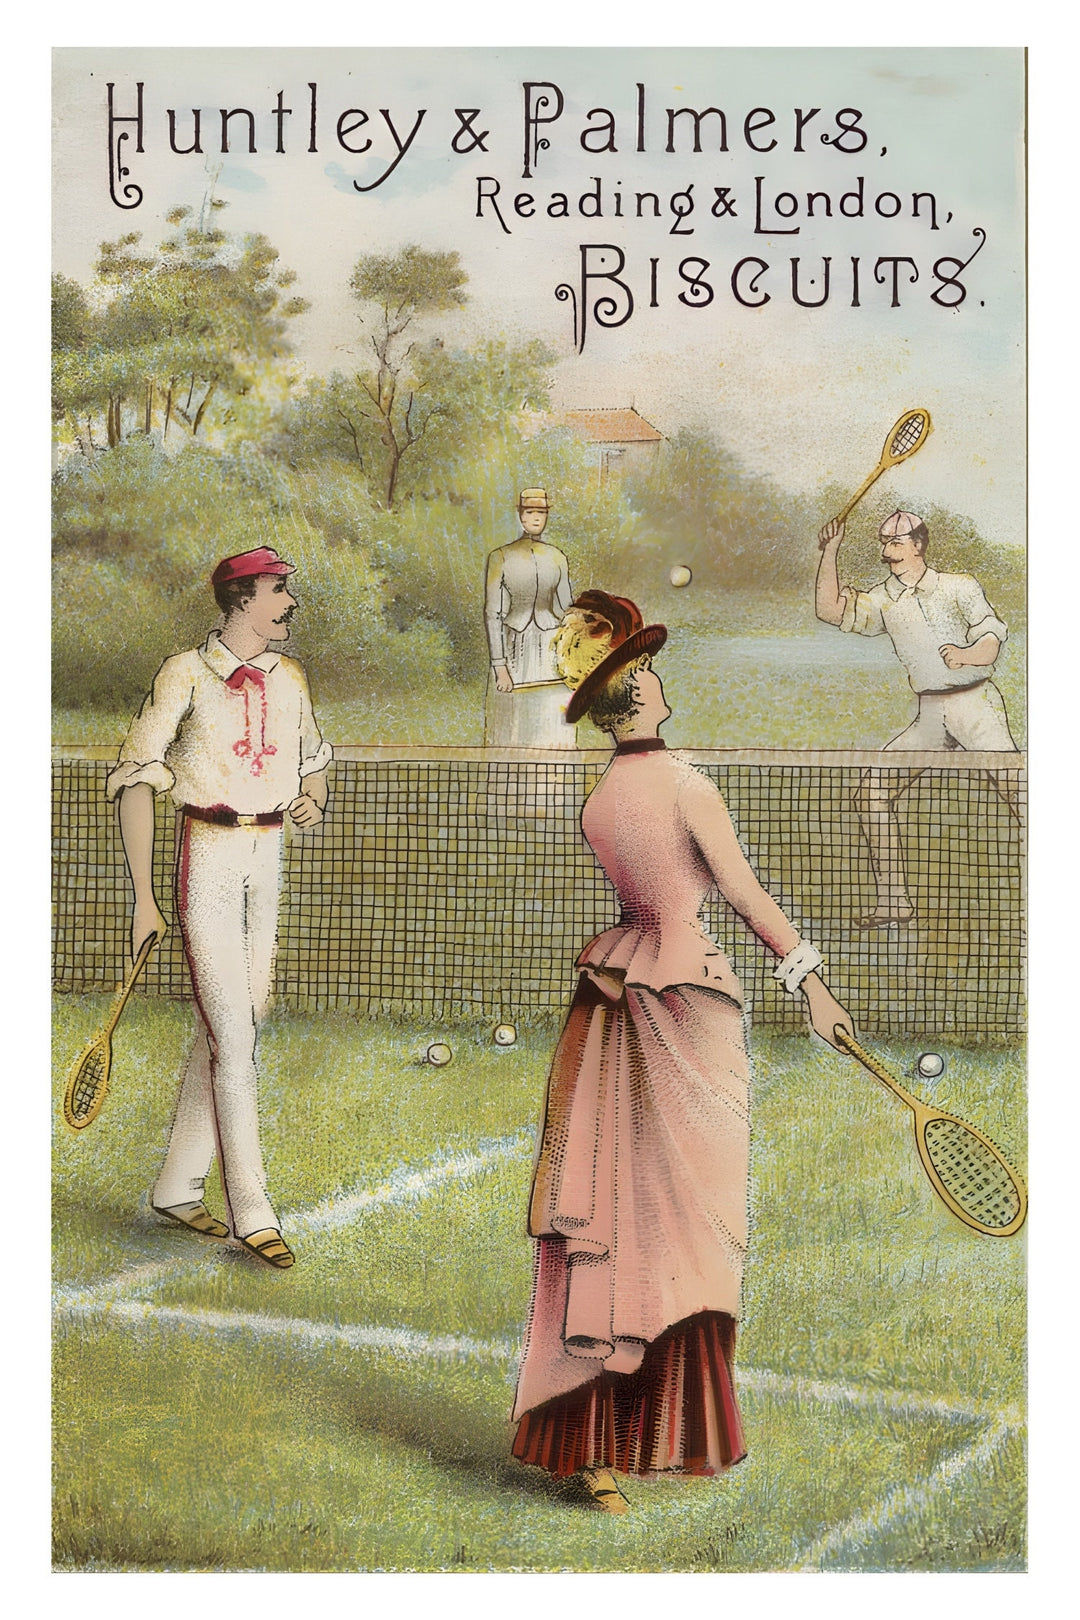 Affiche publicité rétro  Huntley Palmers biscuits I Affiche tennis I Affiche vintage I pub retro